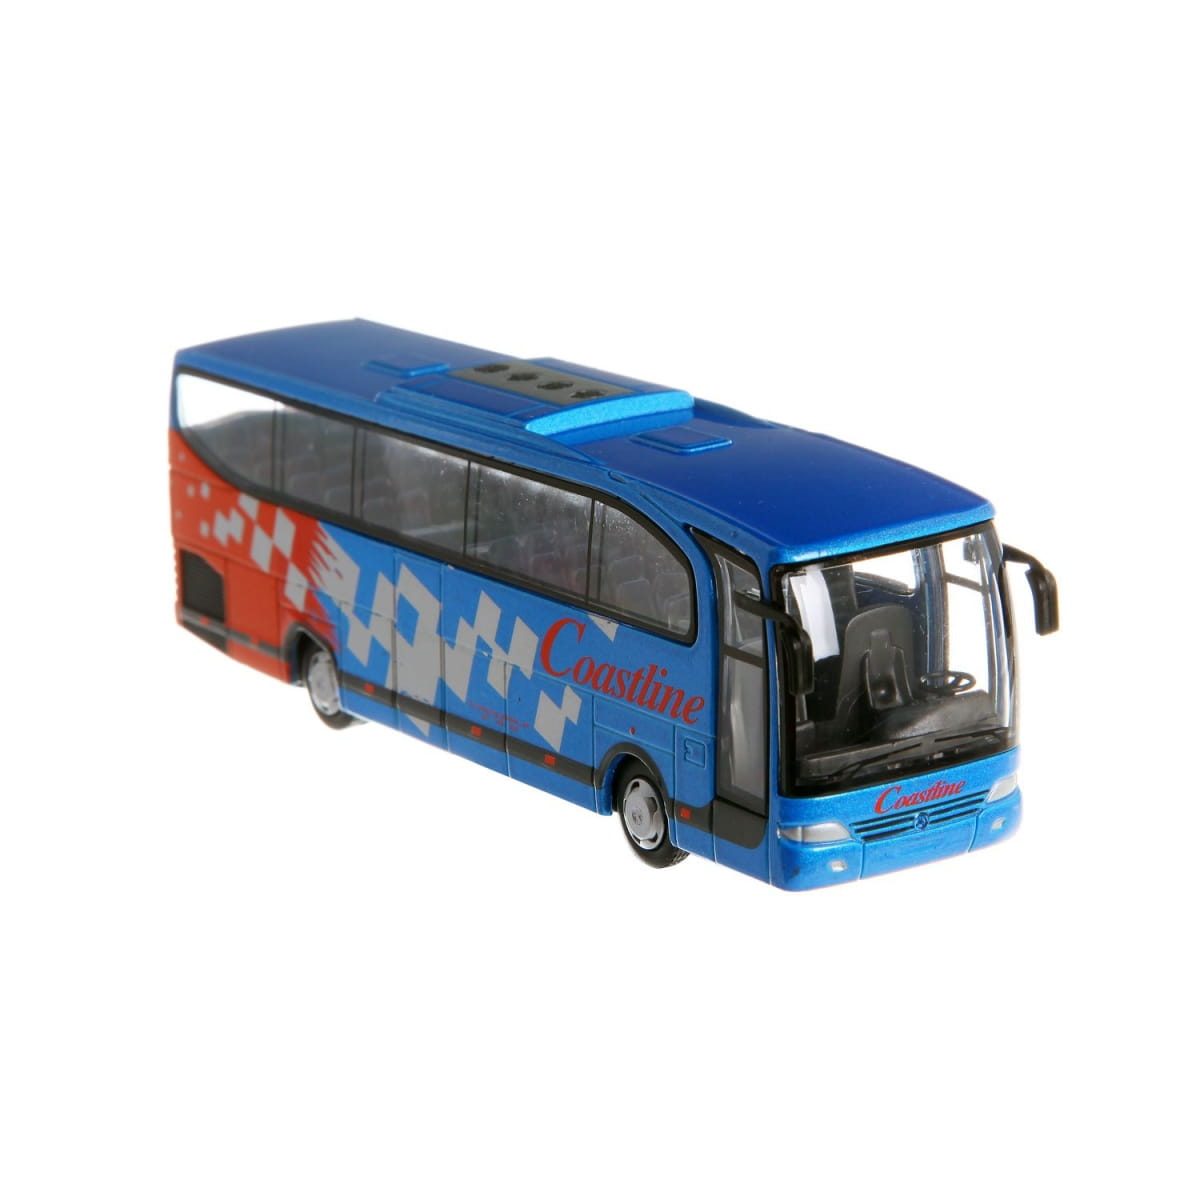    RealToy Coach Bus